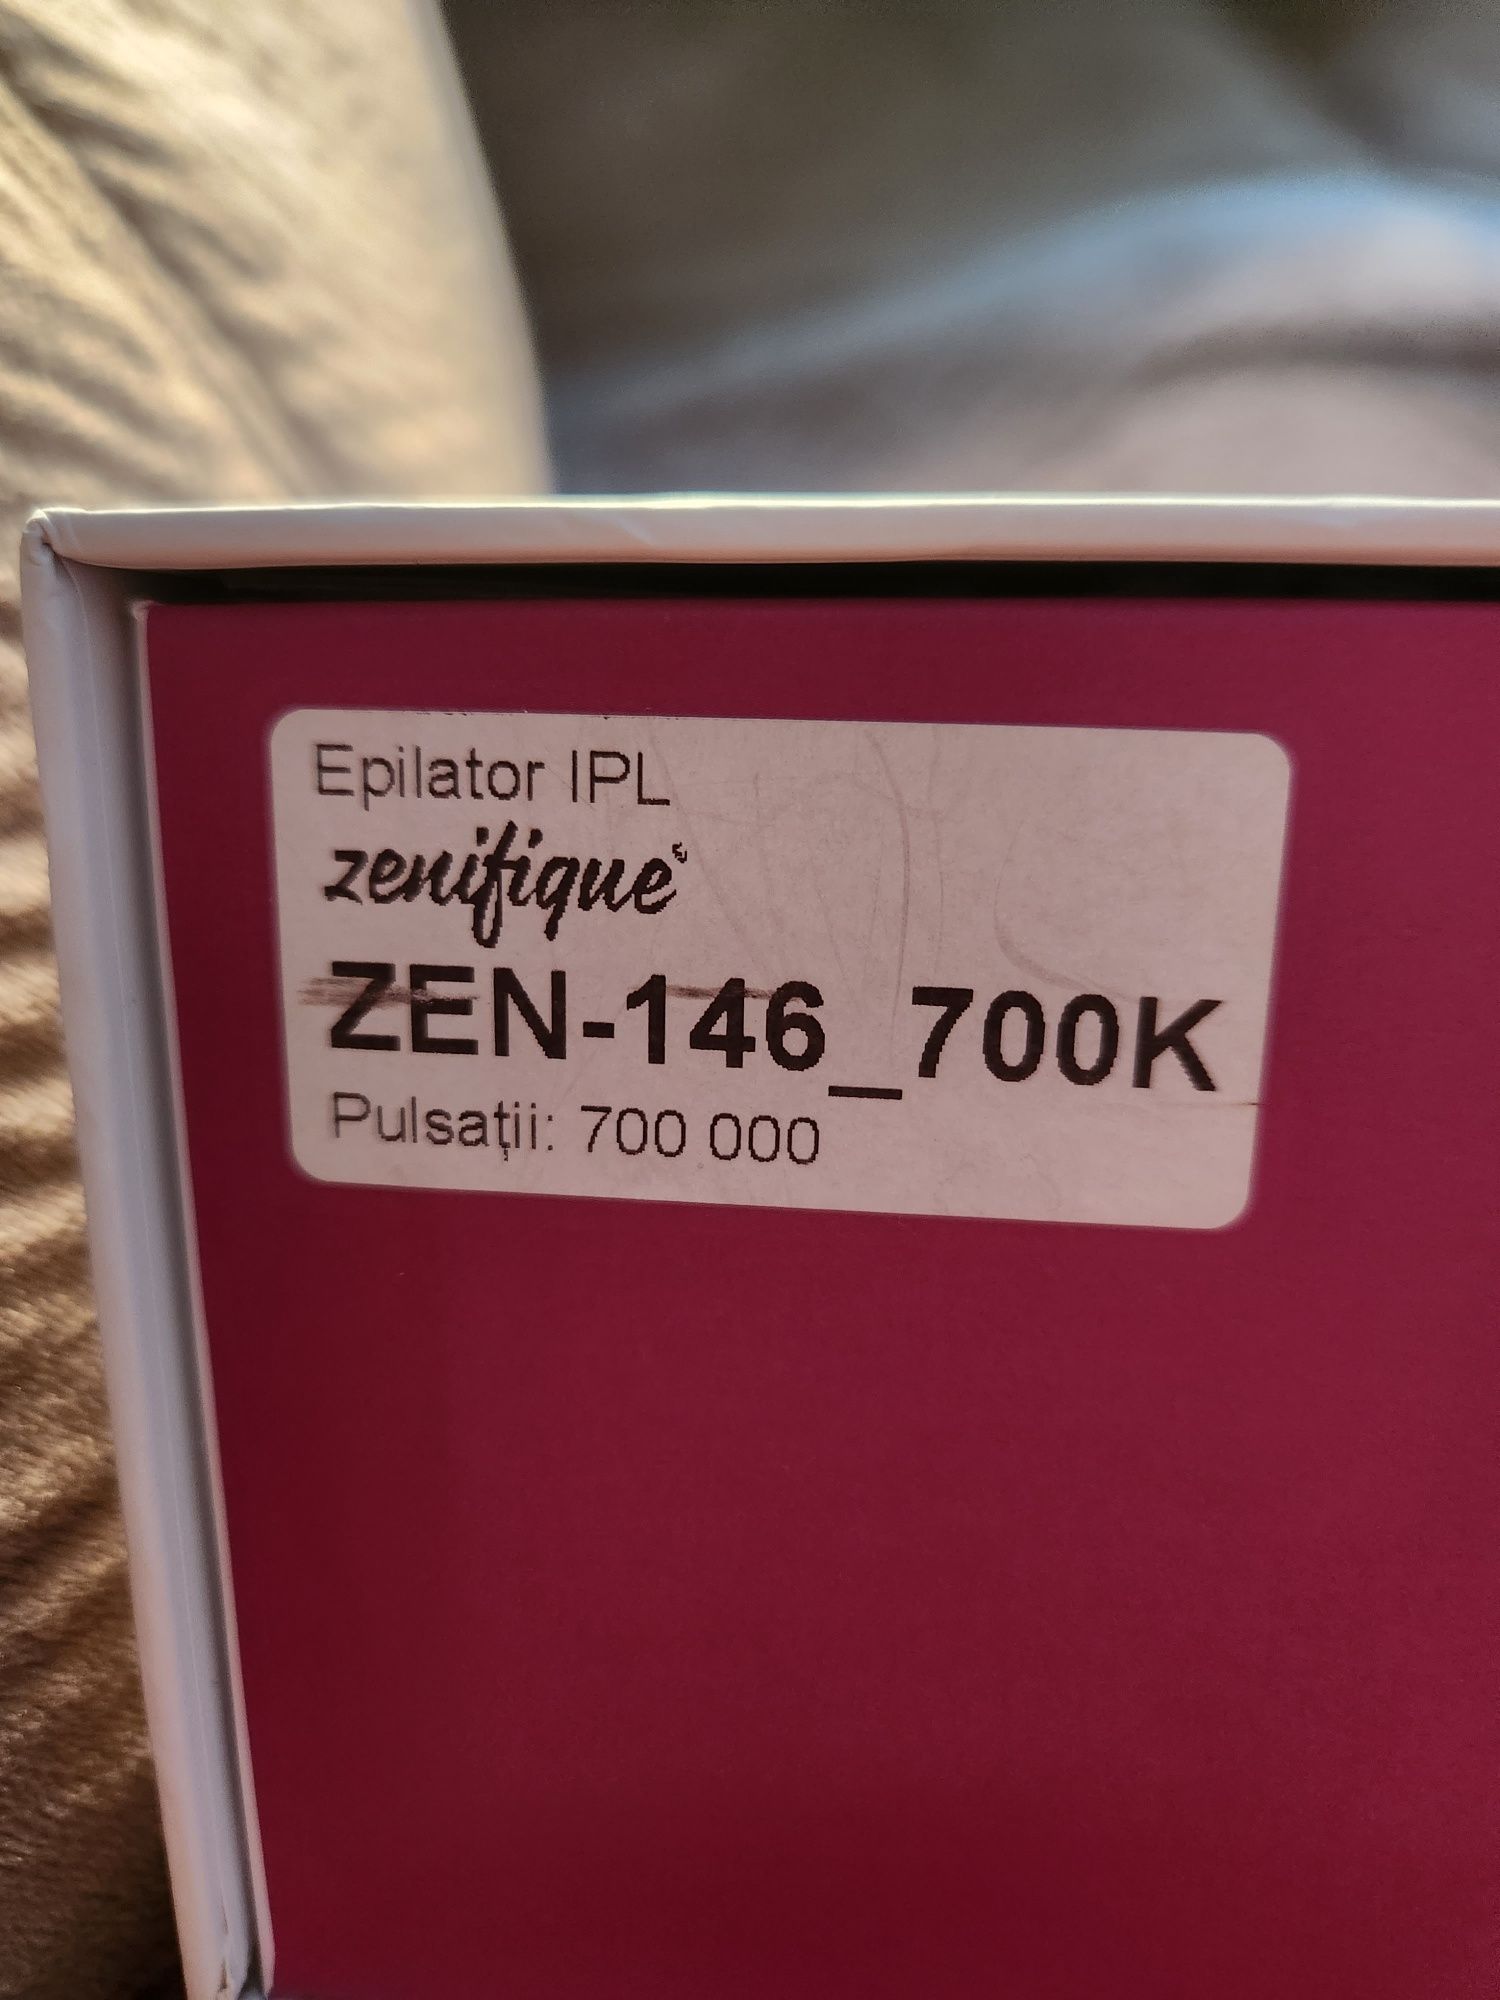 Epilator IPL Zenifique Zen-146_700K